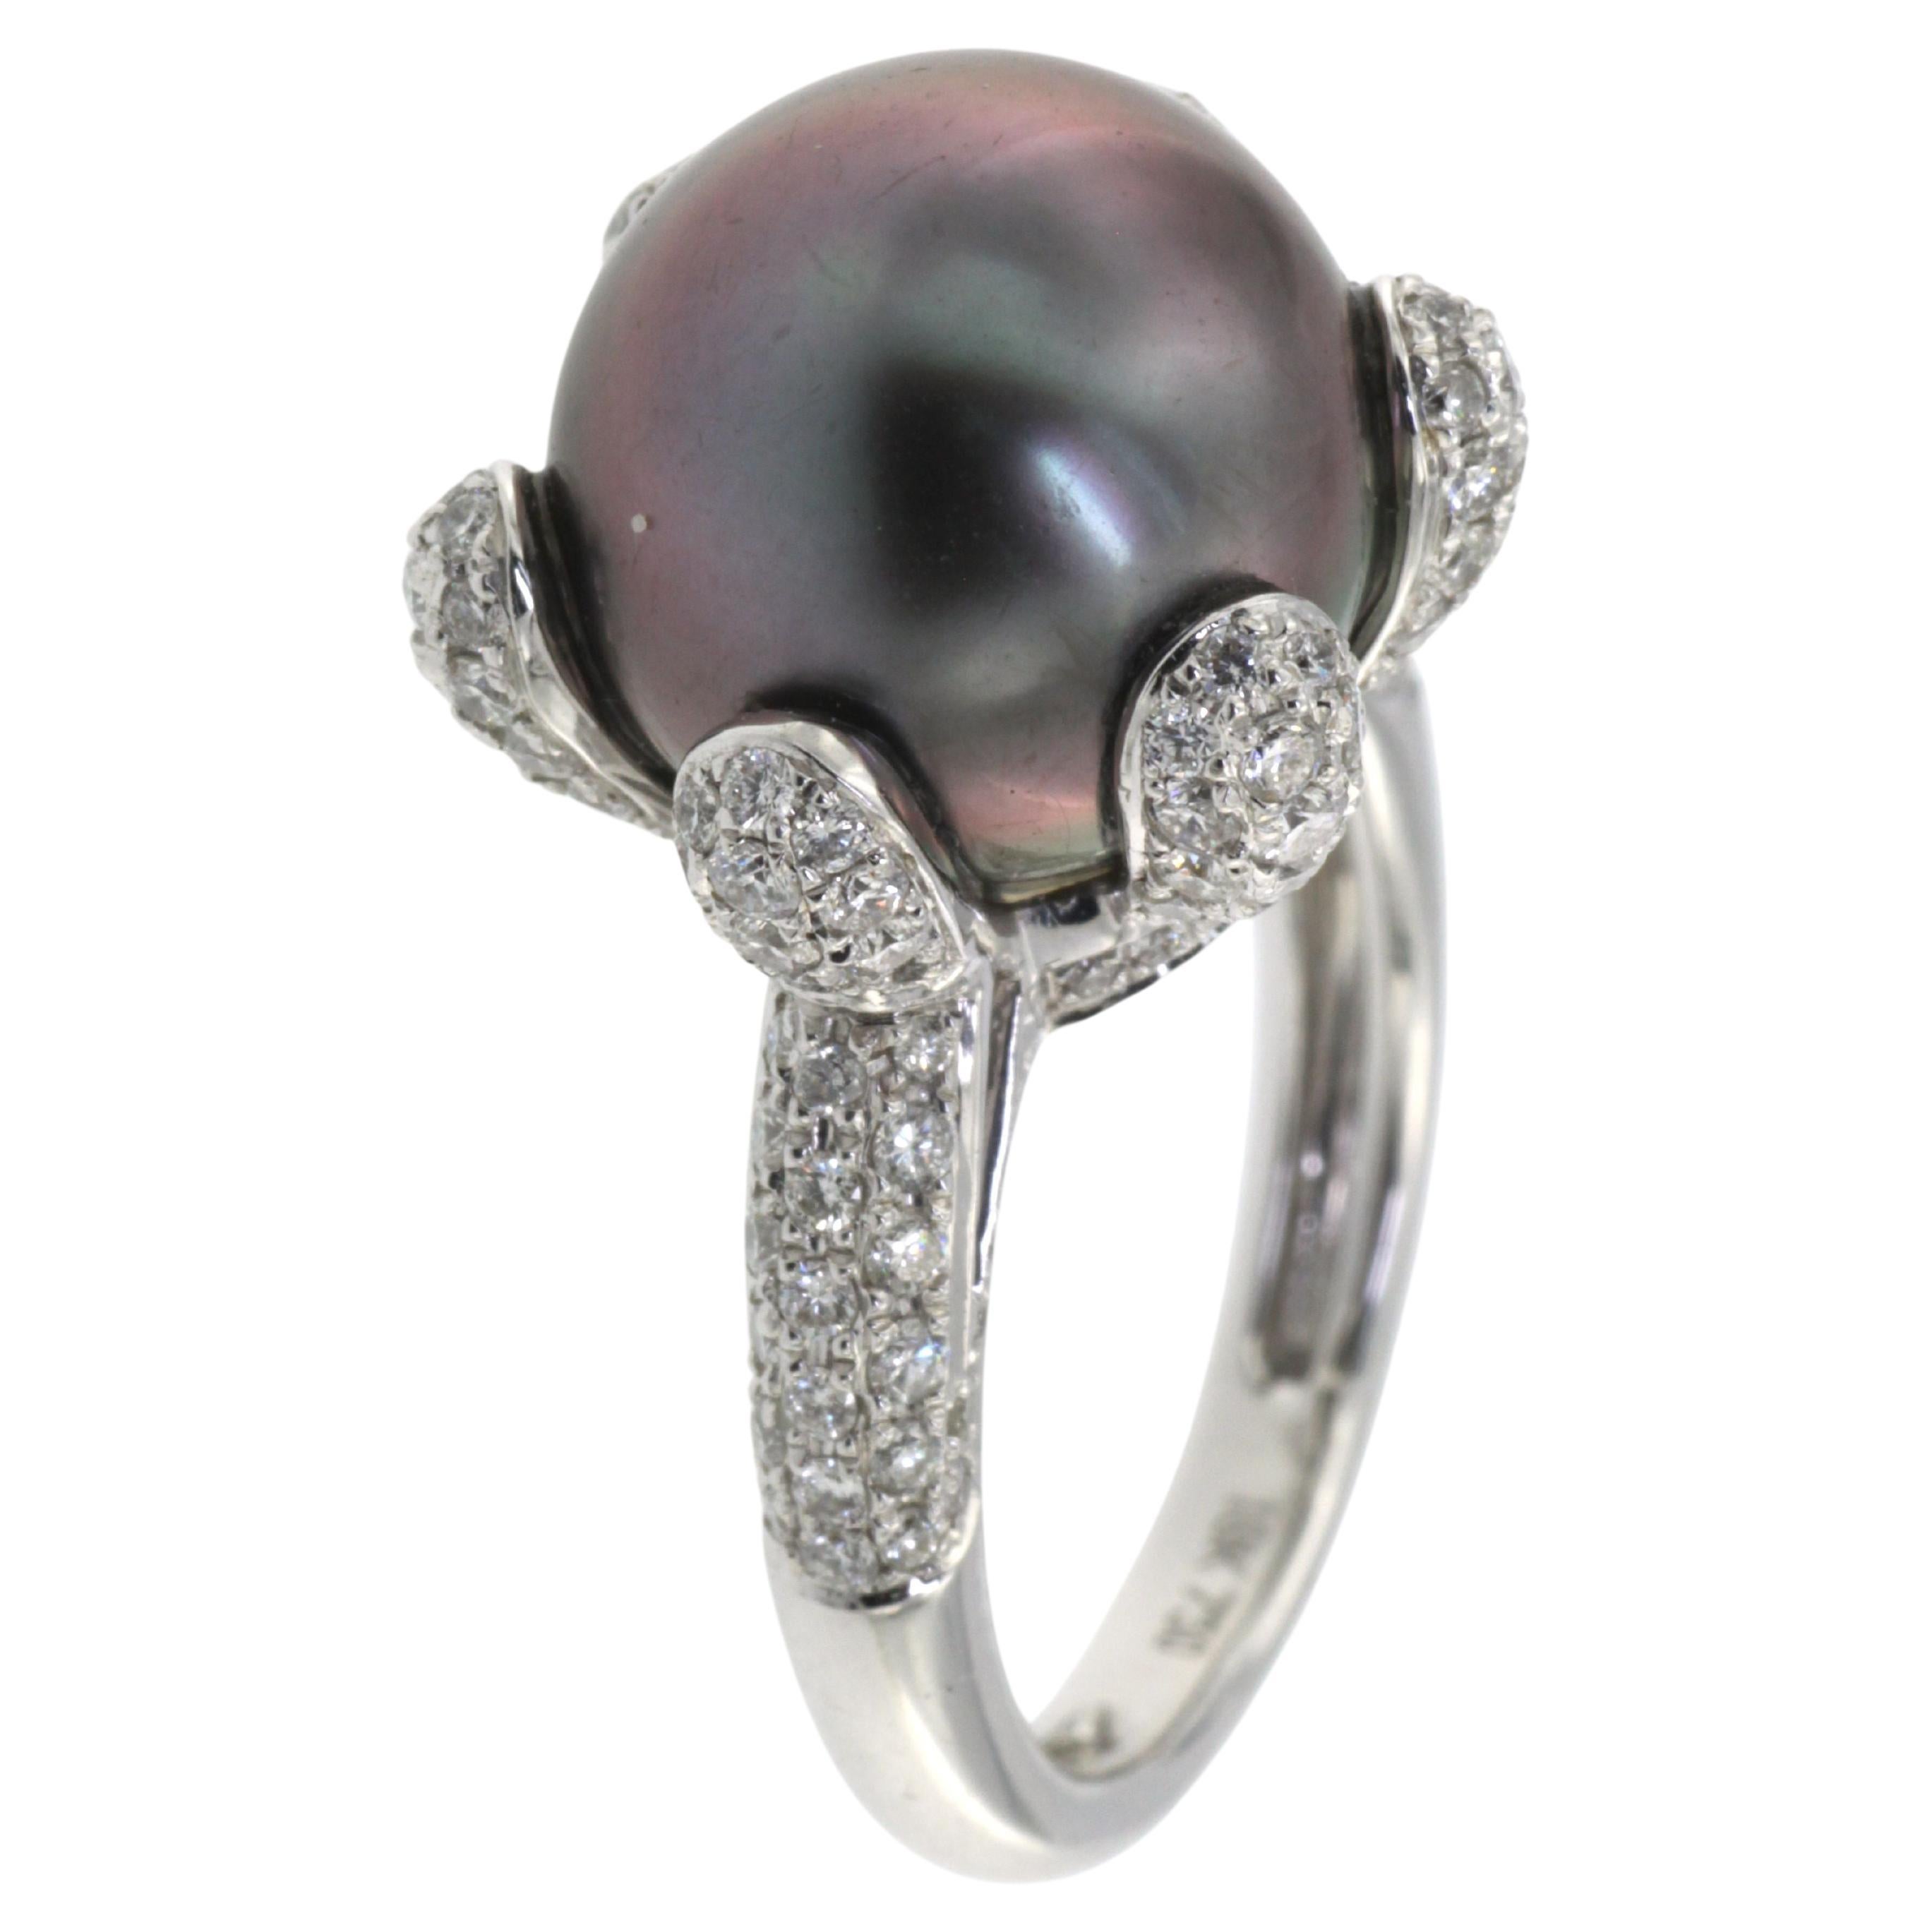 Erleben Sie mit diesem prächtigen Ring den Luxus an Ihren Fingerspitzen. Das Herzstück ist eine 12 mm große schwarze Tahiti-Perle, die einen geheimnisvollen Glanz ausstrahlt, der Bewunderung hervorruft. Dieses majestätische Schmuckstück wird elegant